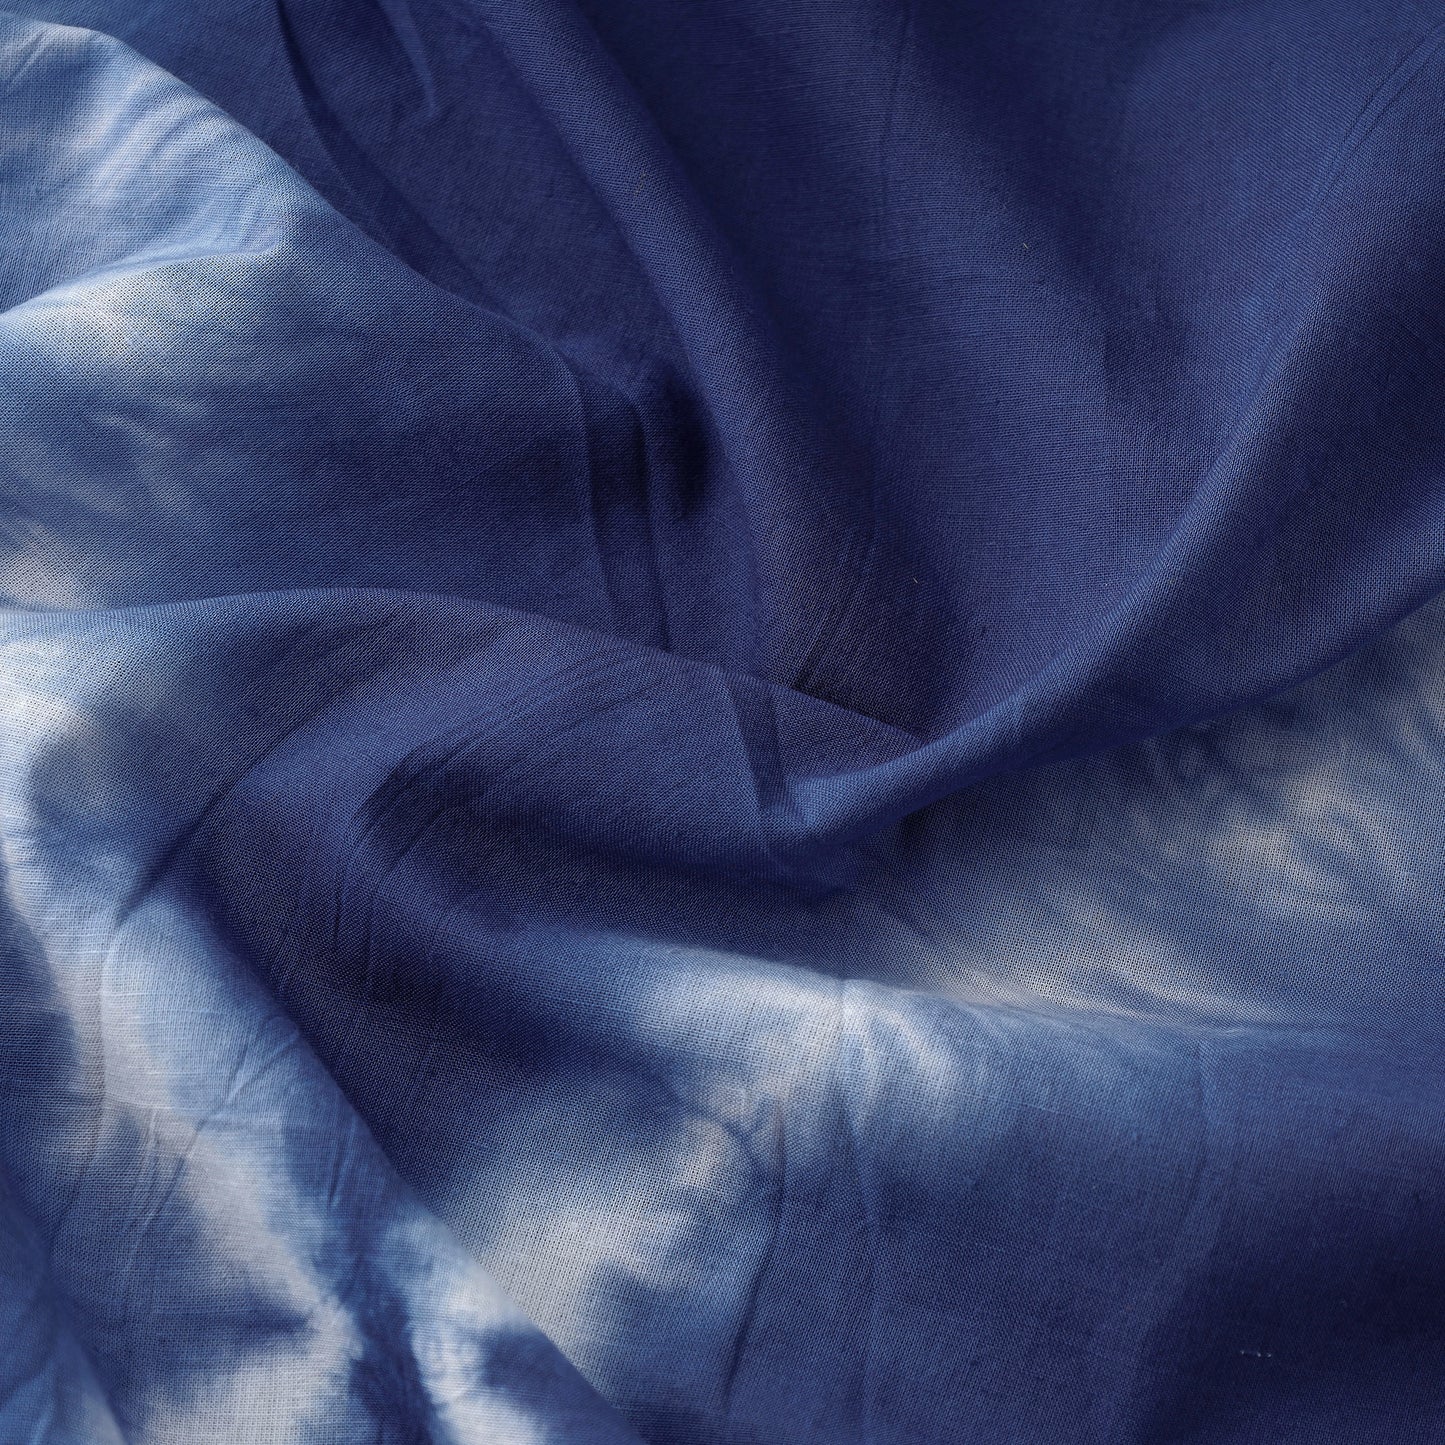 Blue - Shibori Tie-Dye Cotton Fabric